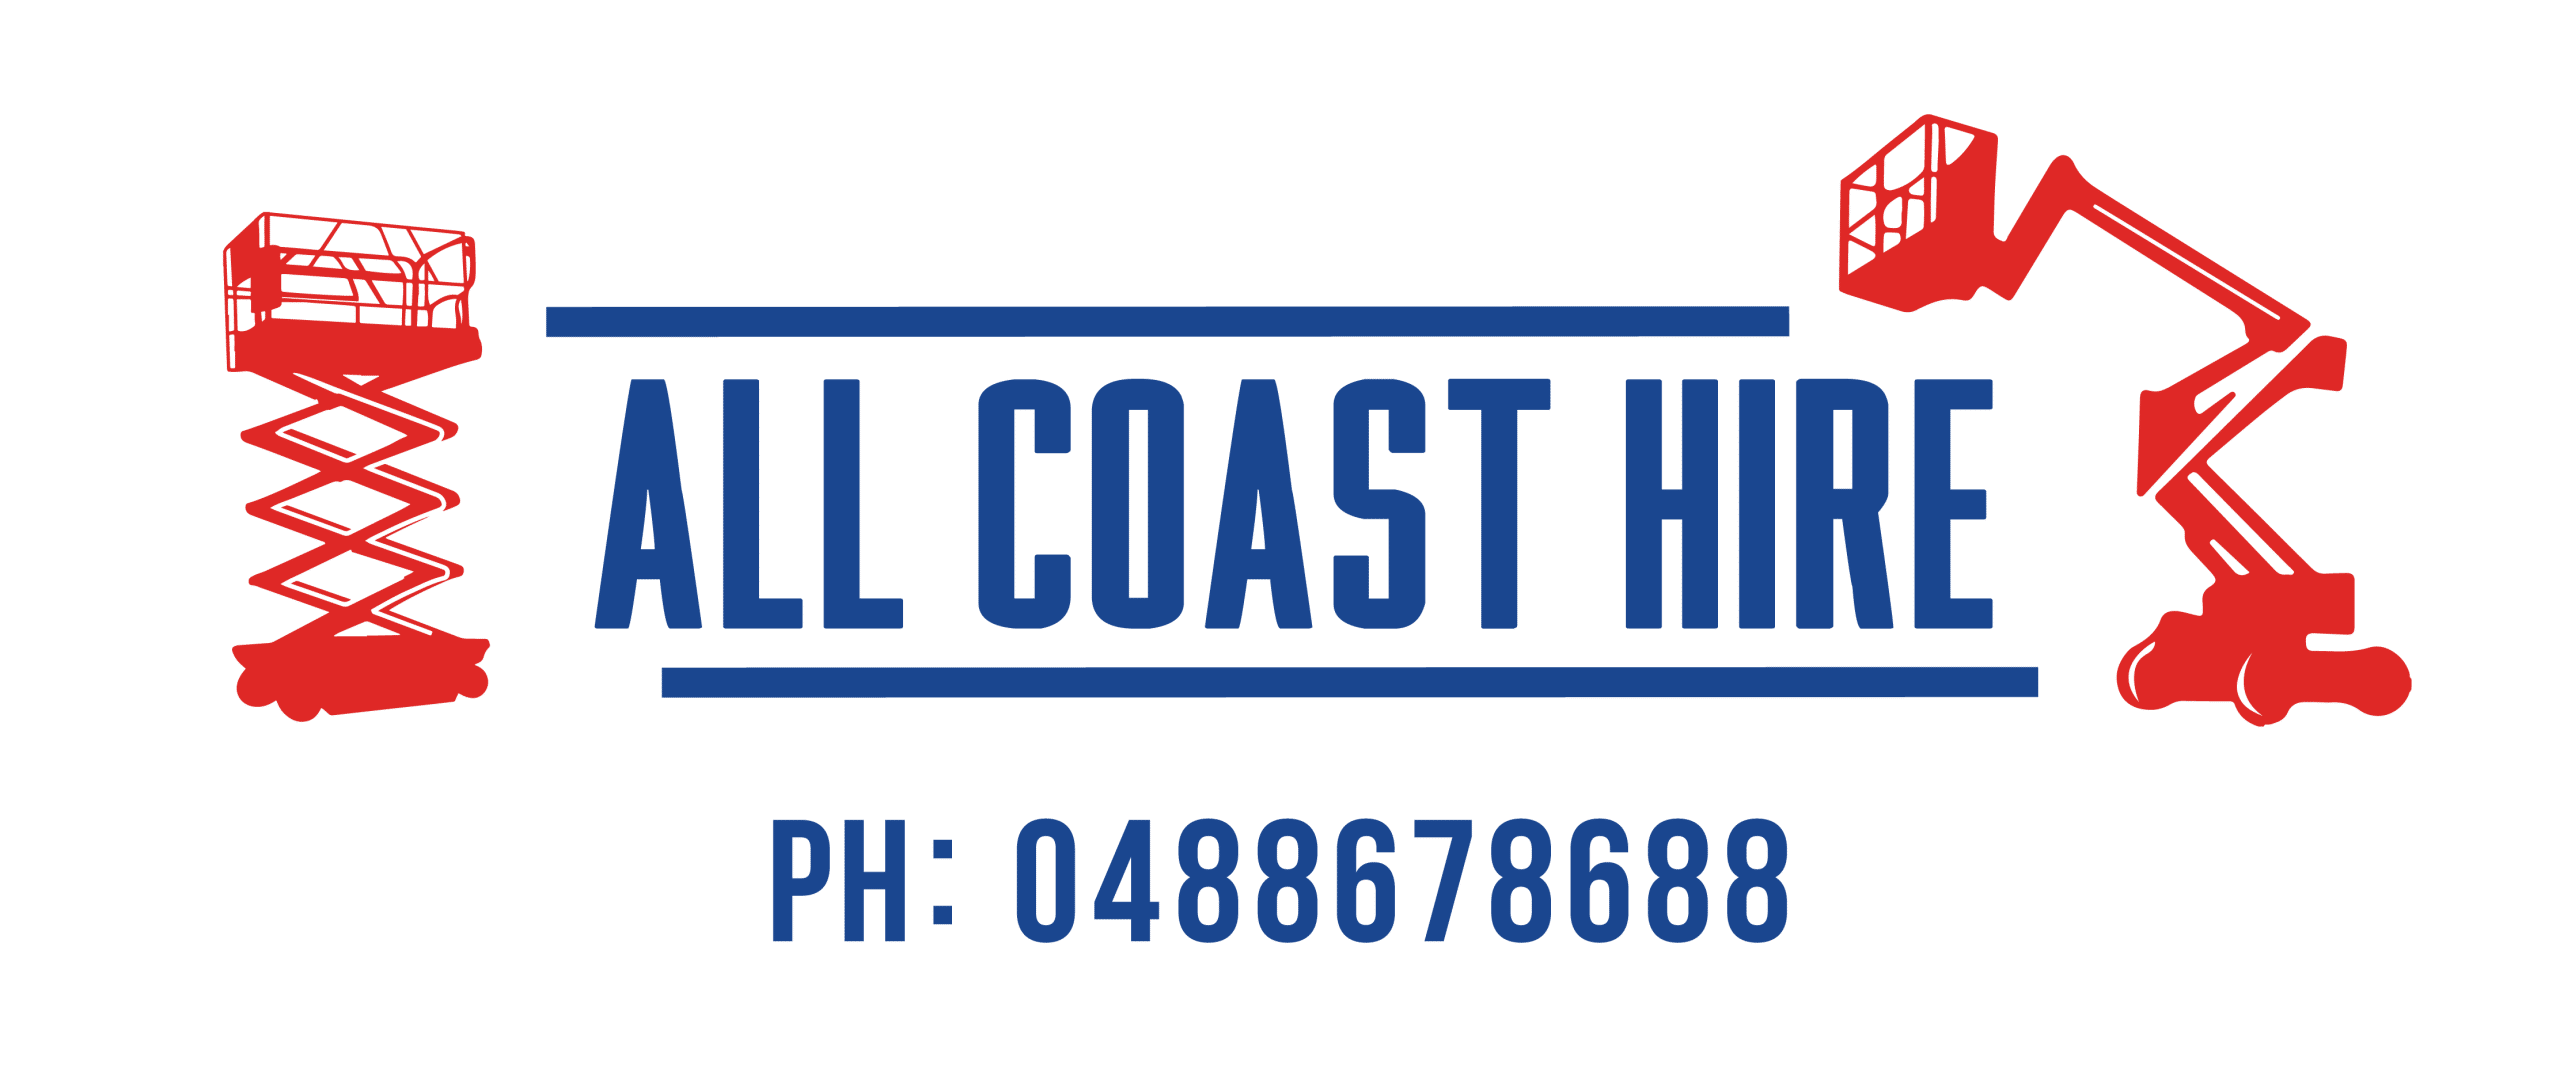 All Coast Logo Hire